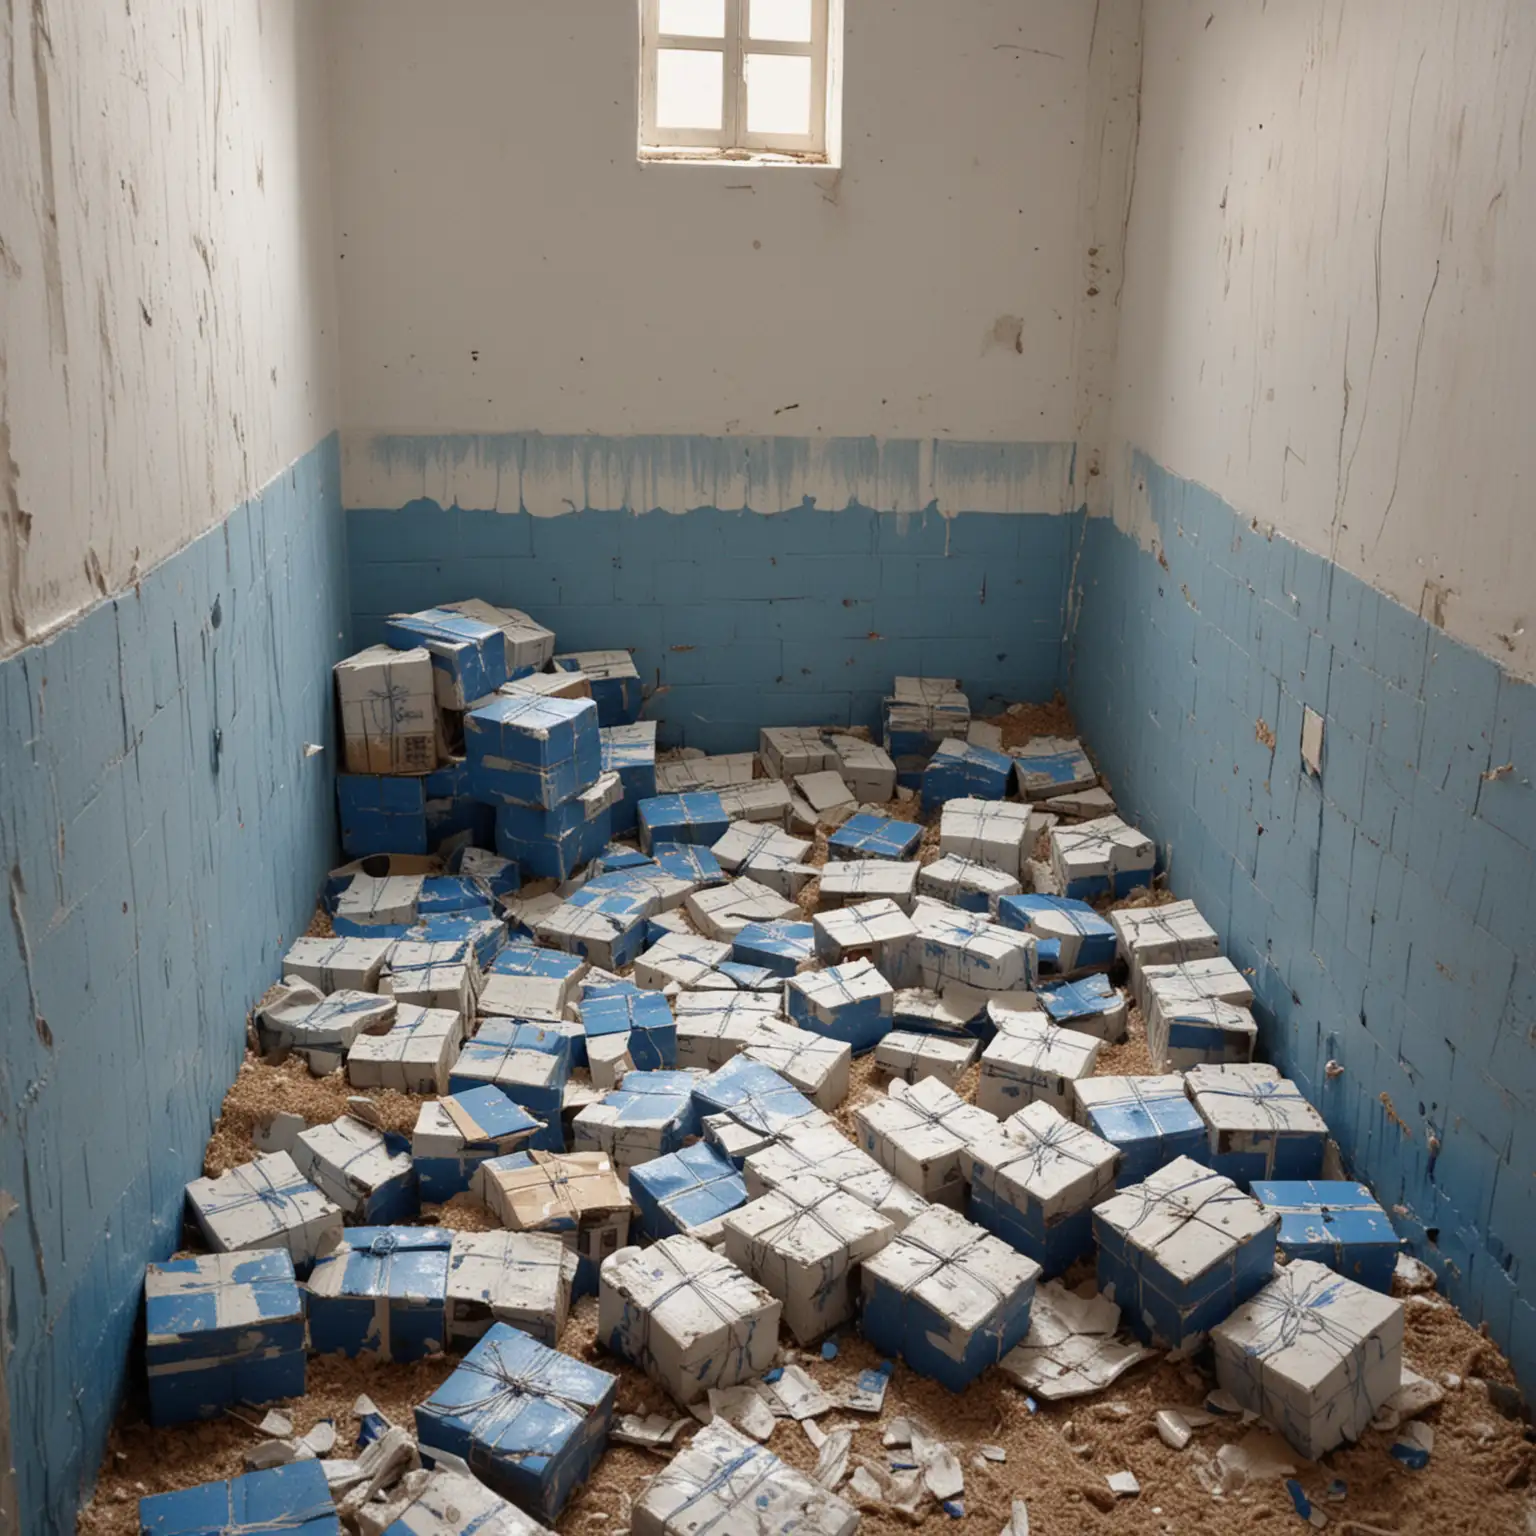 unhabitacion vacia llena de cajas vacias de carton y sabas en el piso muchas de rayas blancas y azules